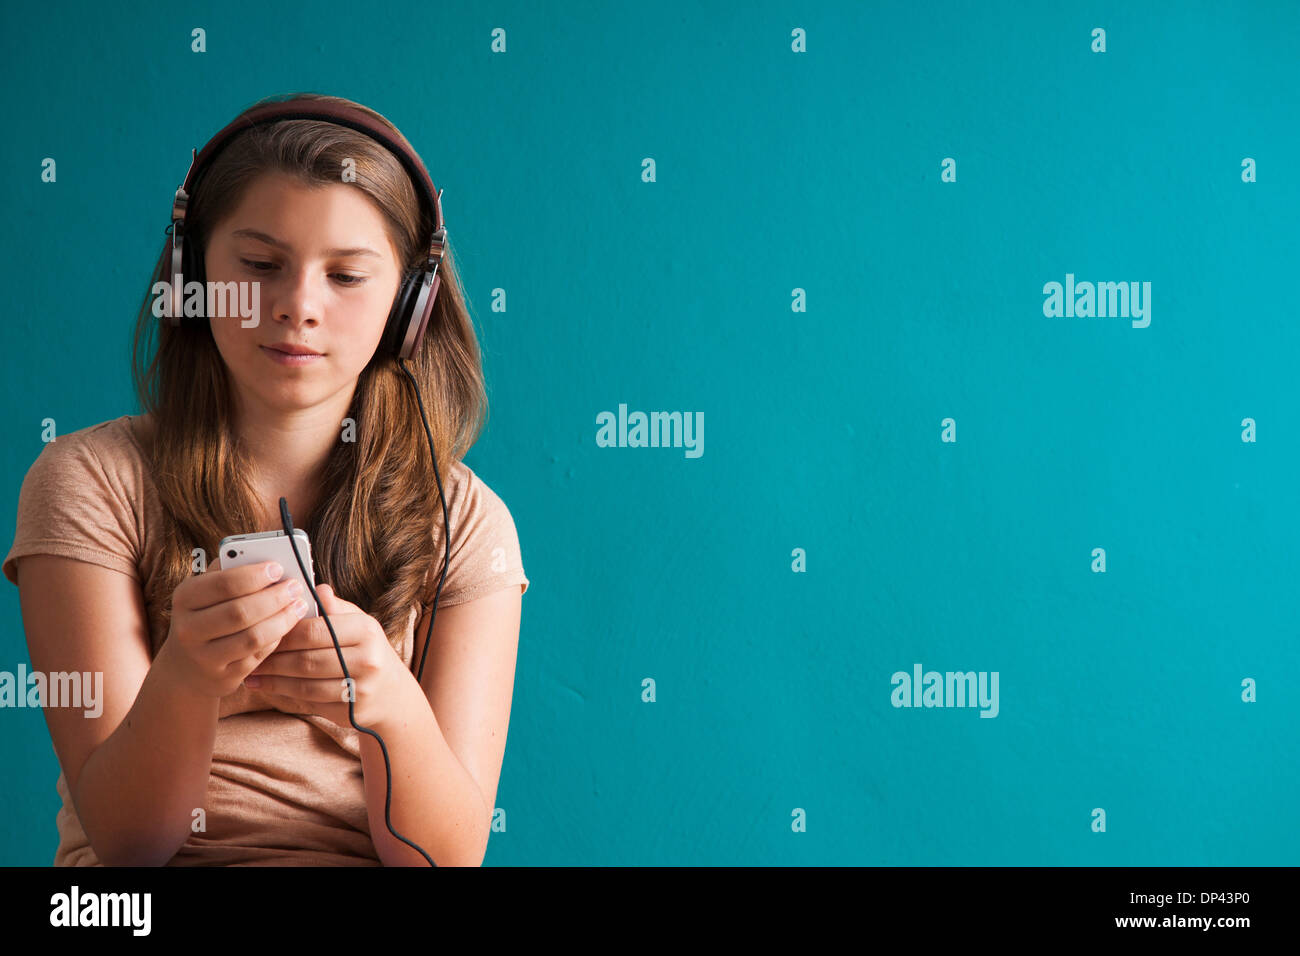 Girl wearing headphones, regardant le lecteur MP3, Allemagne Banque D'Images